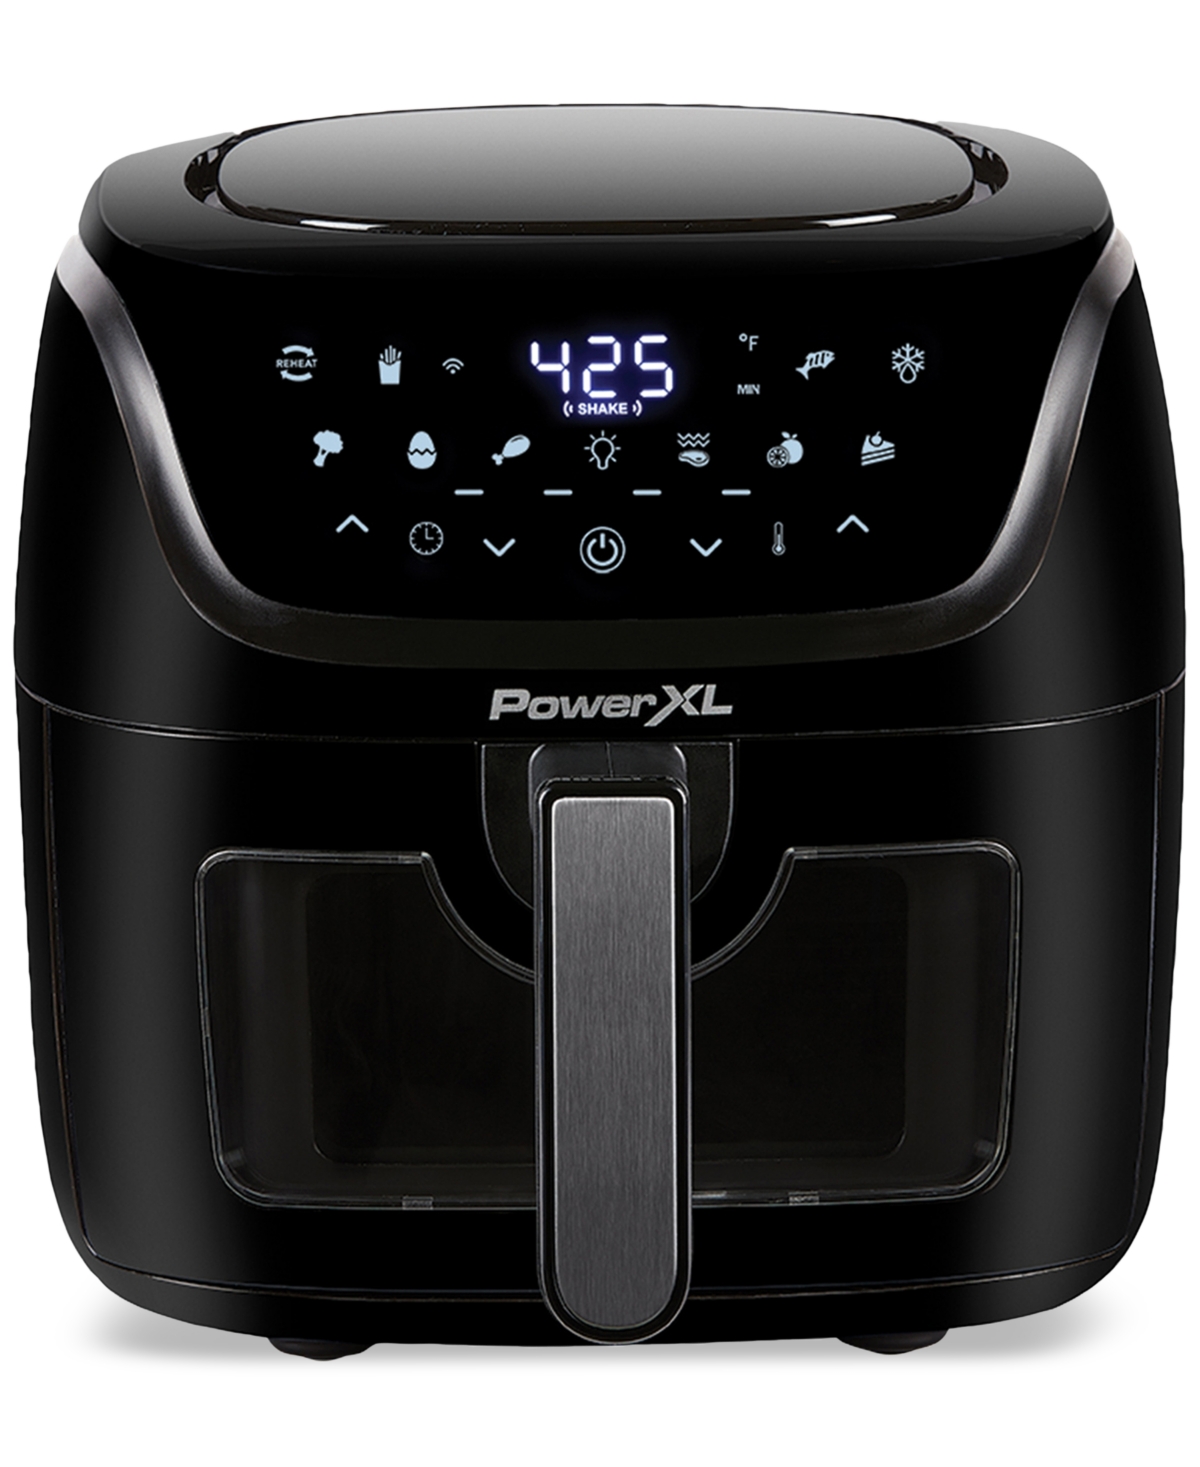 Powerxl 8 Qt Vortex Smarttech Wifi Touchscreen Air Fryer In Black